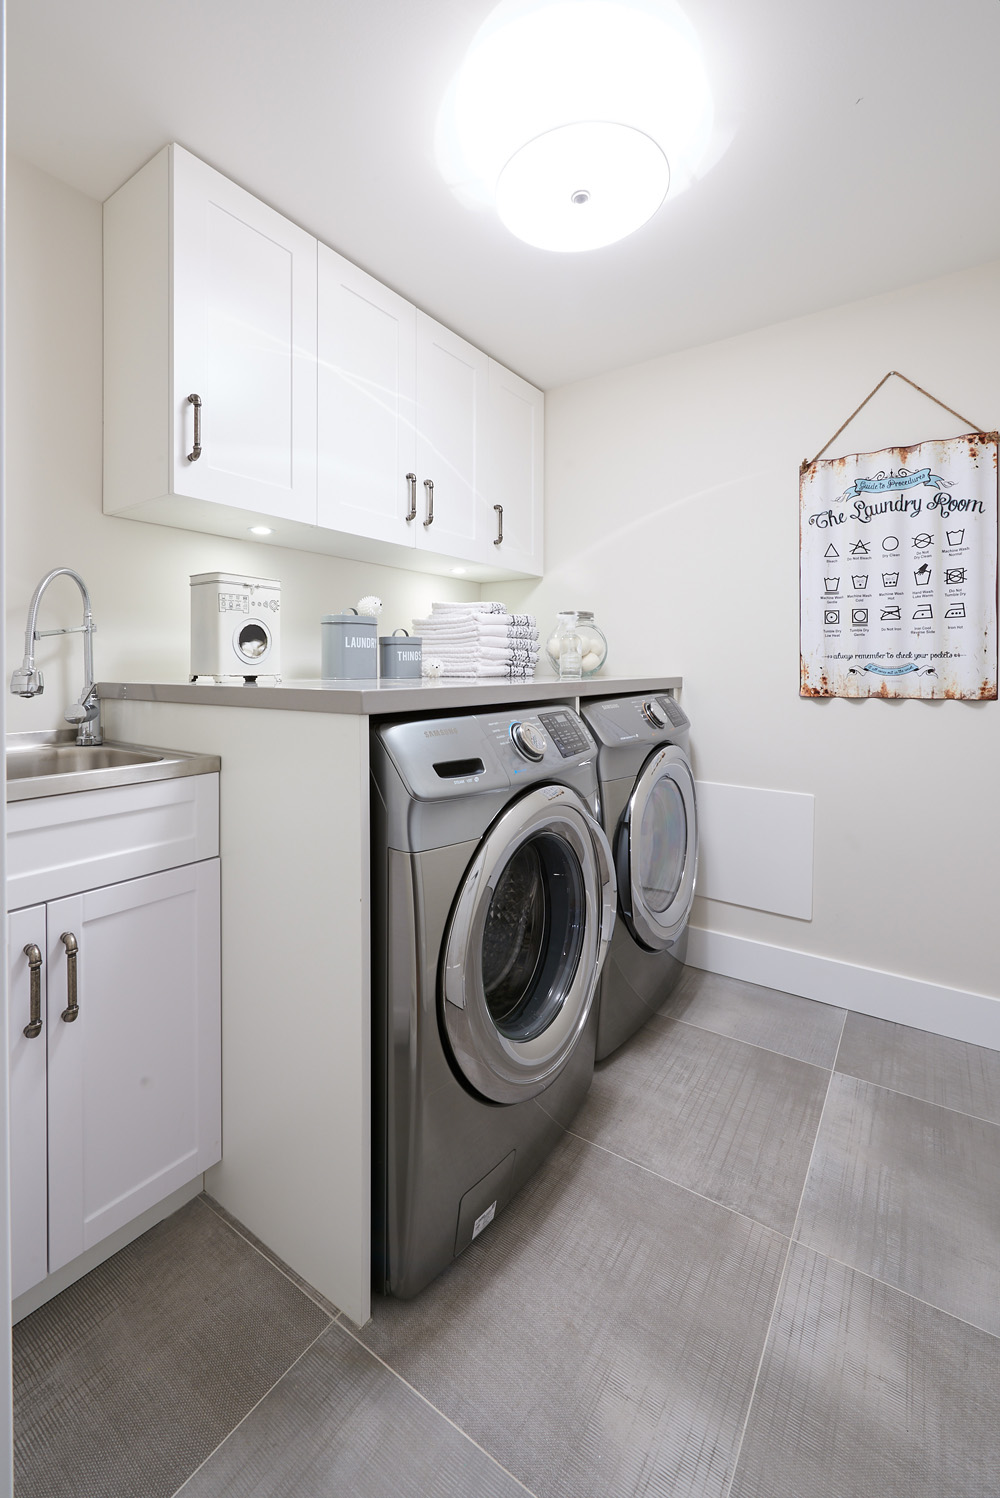 All-white laundry room design.